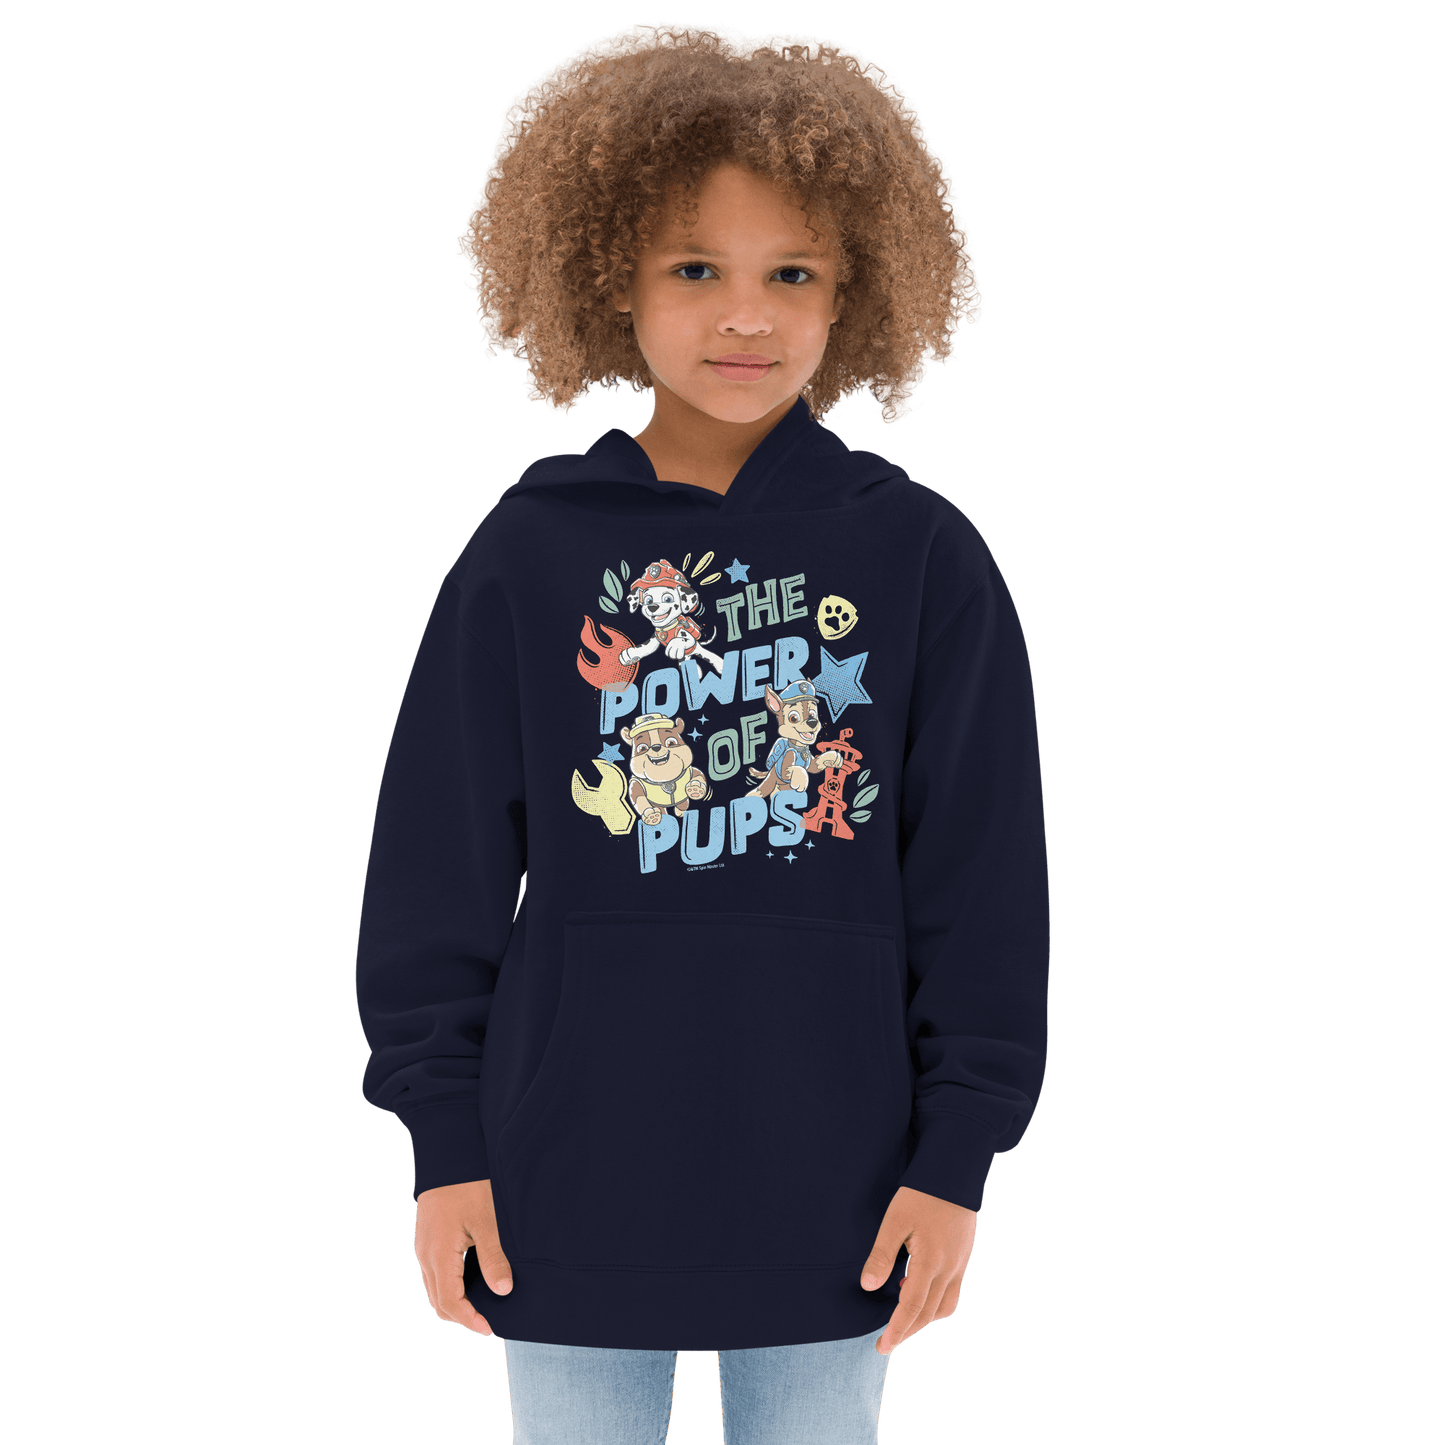 PAW Patrol Power Of Pups Kids Hooded Sweatshirt - Paramount Shop